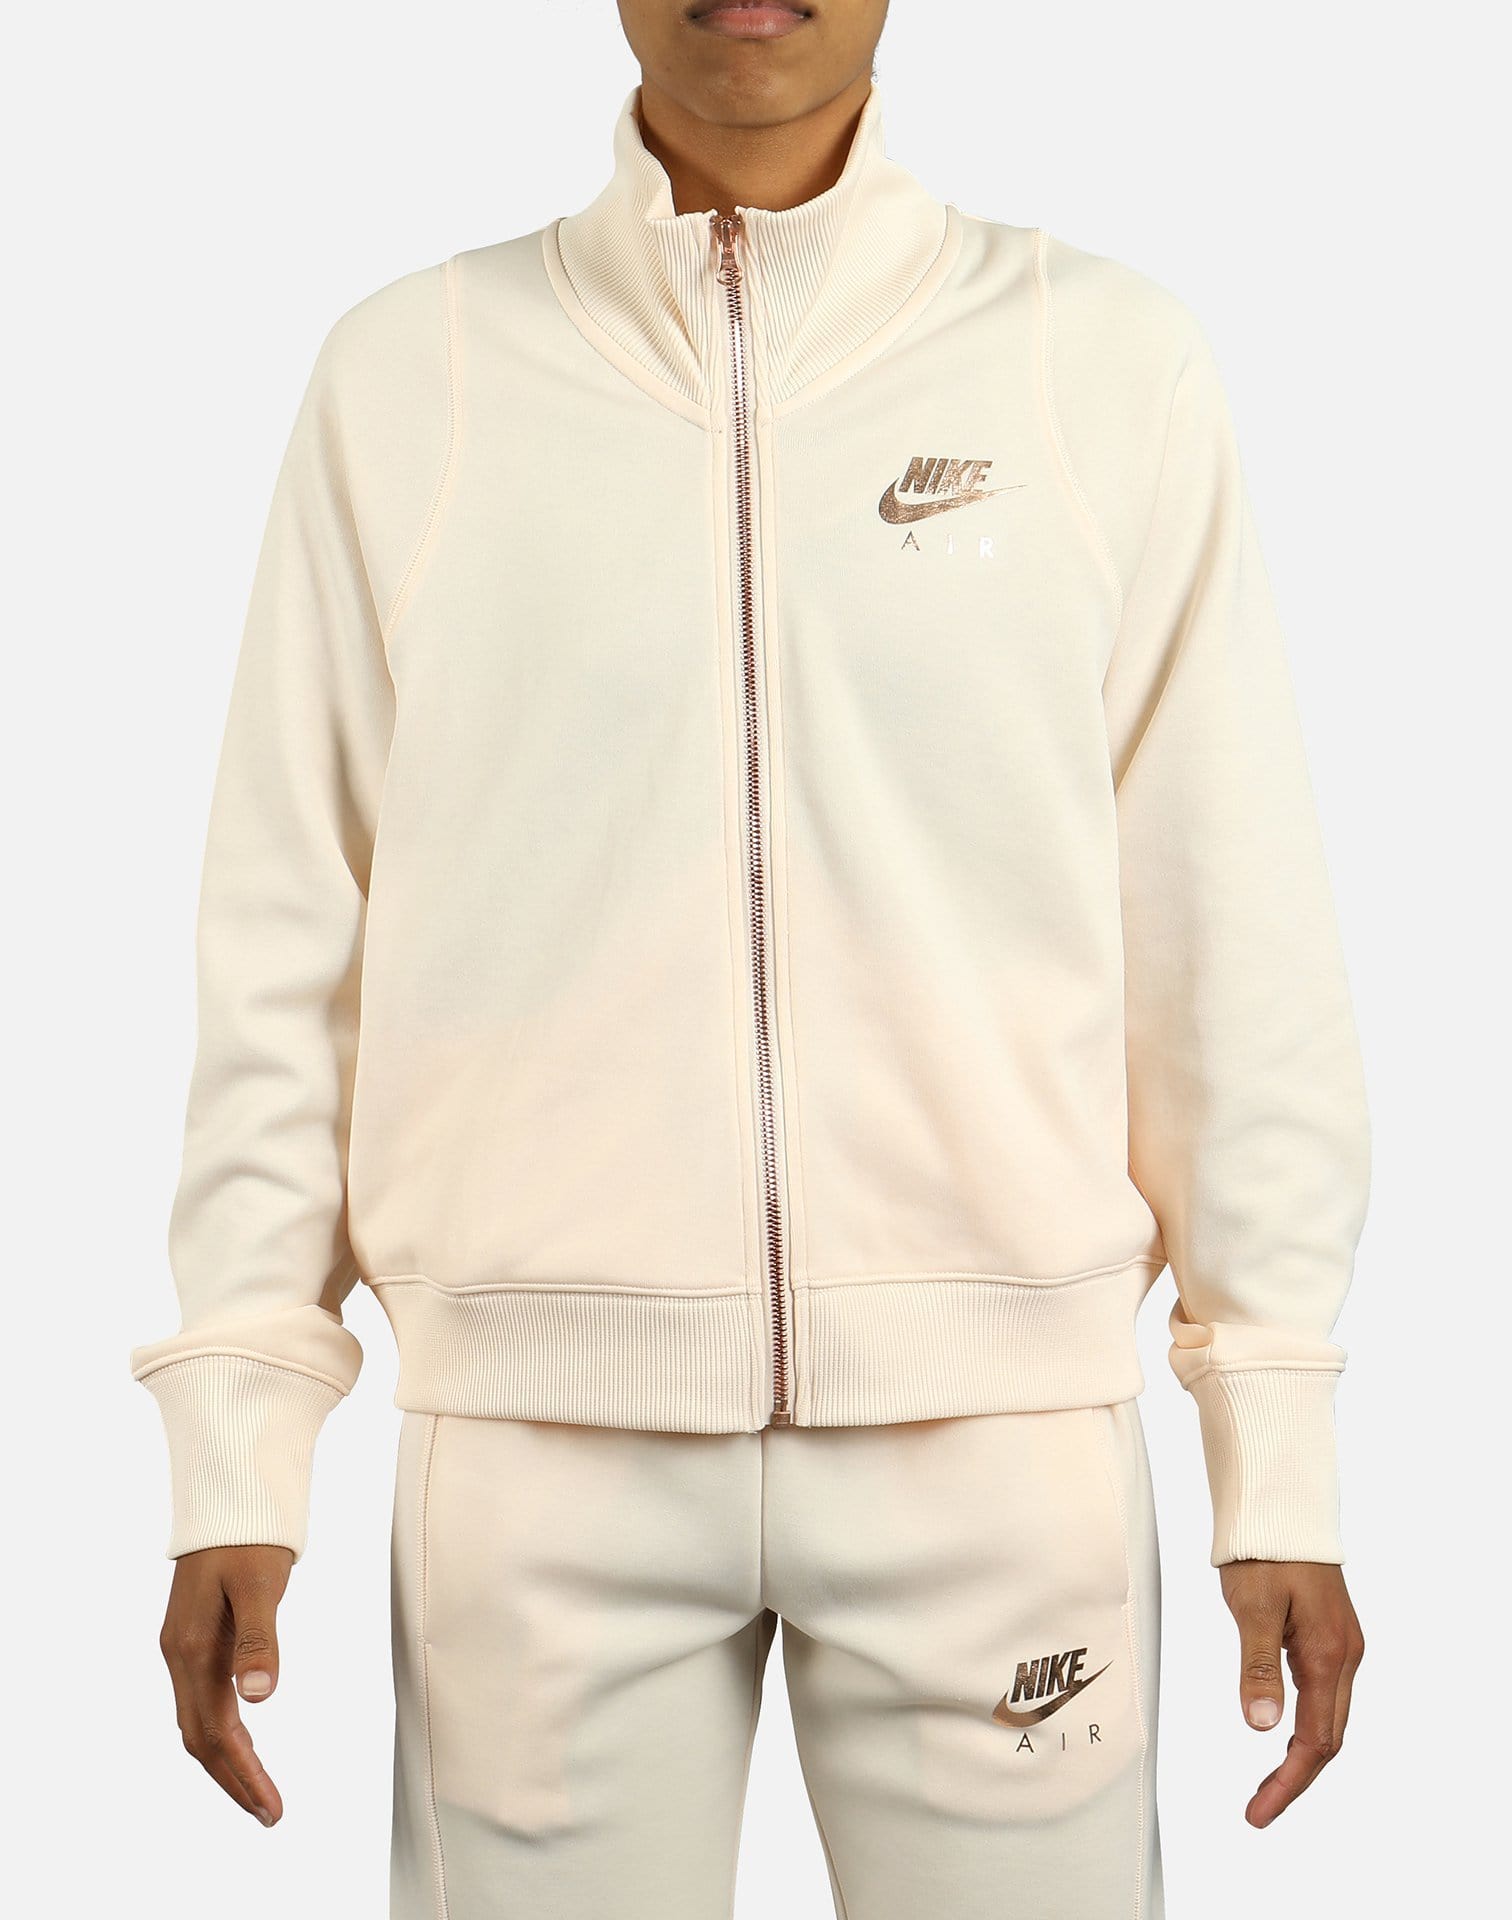 Nike Women's Air N98 Zip Jacket